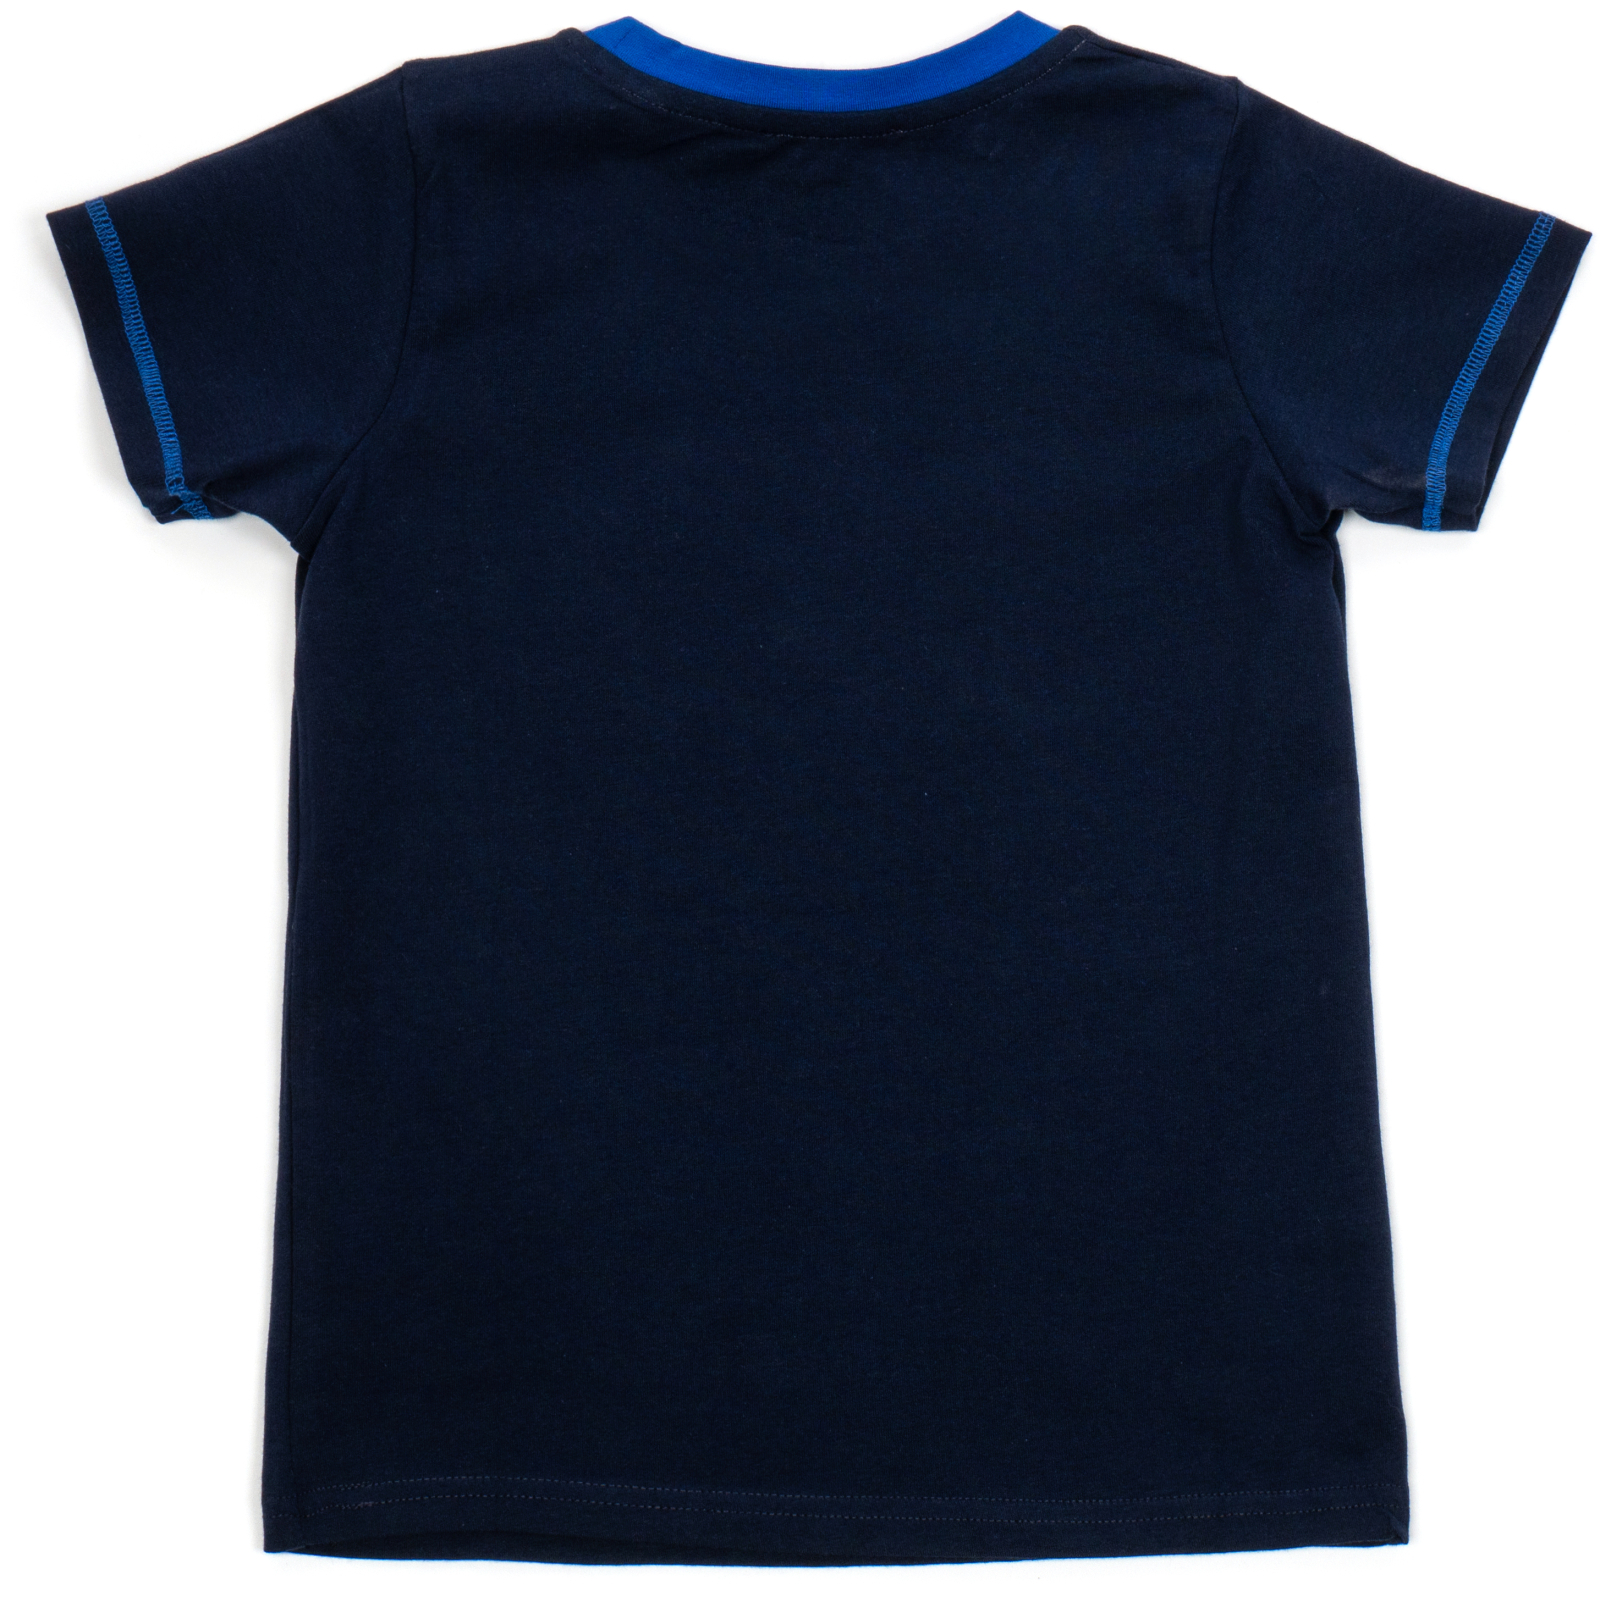 Пижама Matilda с футболкой (11701-3-134B-blue) изображение 5